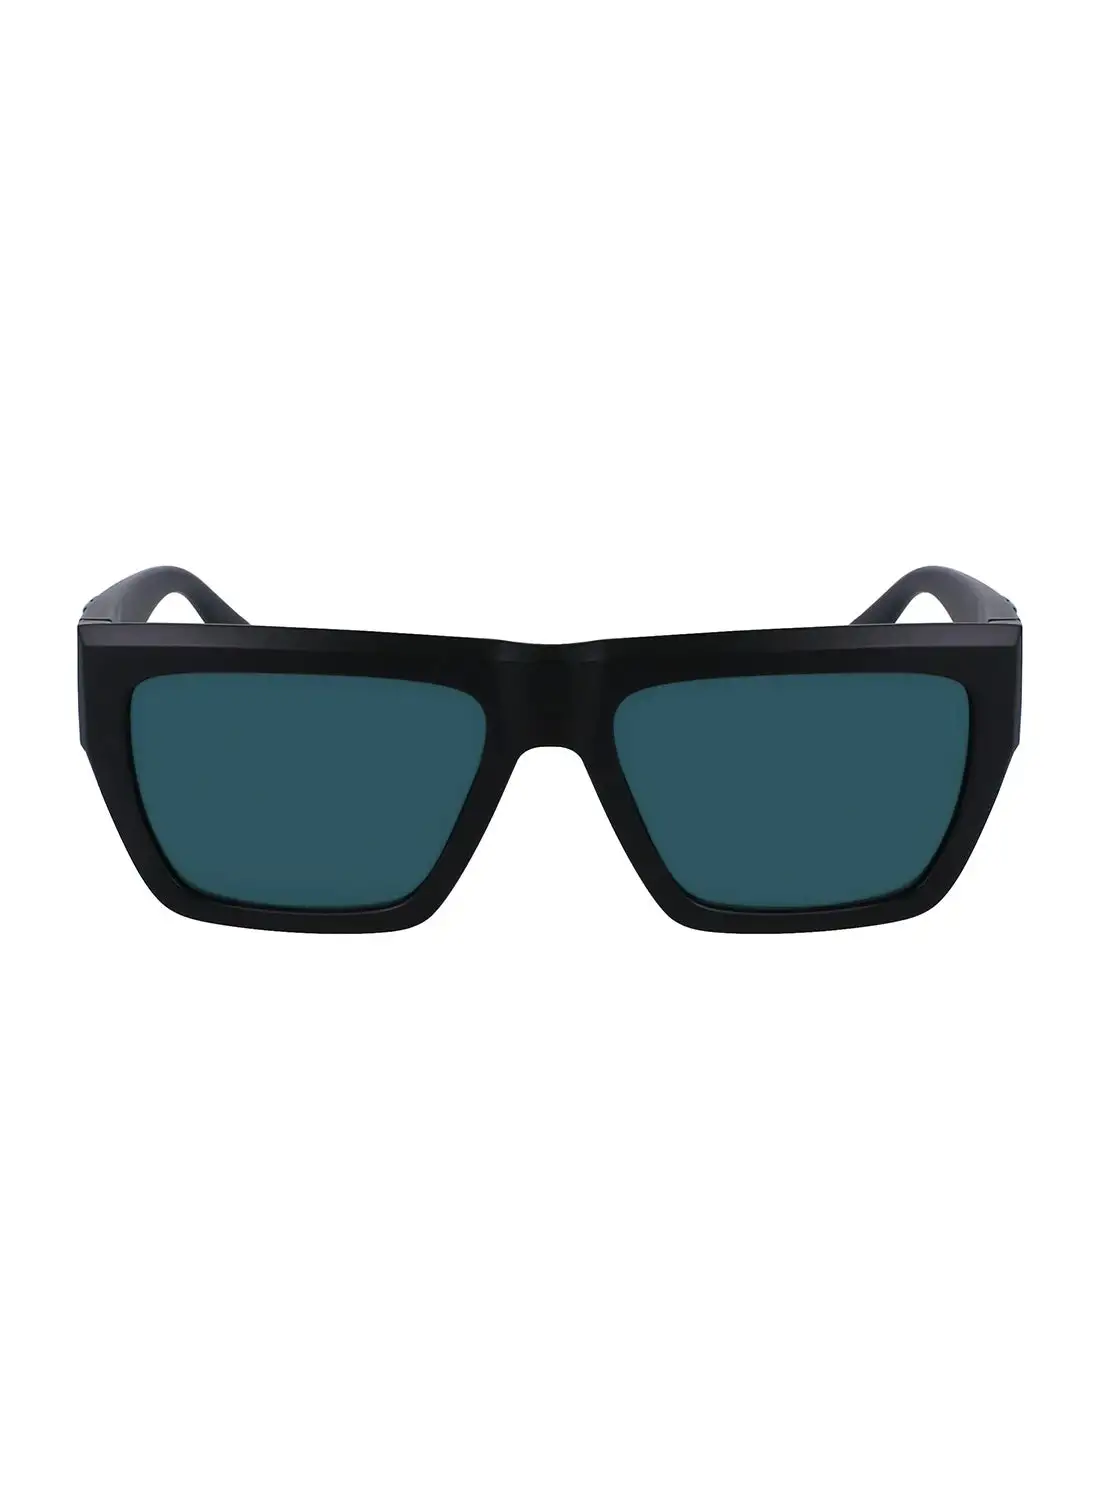 Calvin Klein Jeans Men's Rectangular Sunglasses - CKJ23653S-002-5517 - Lens Size: 55 Mm